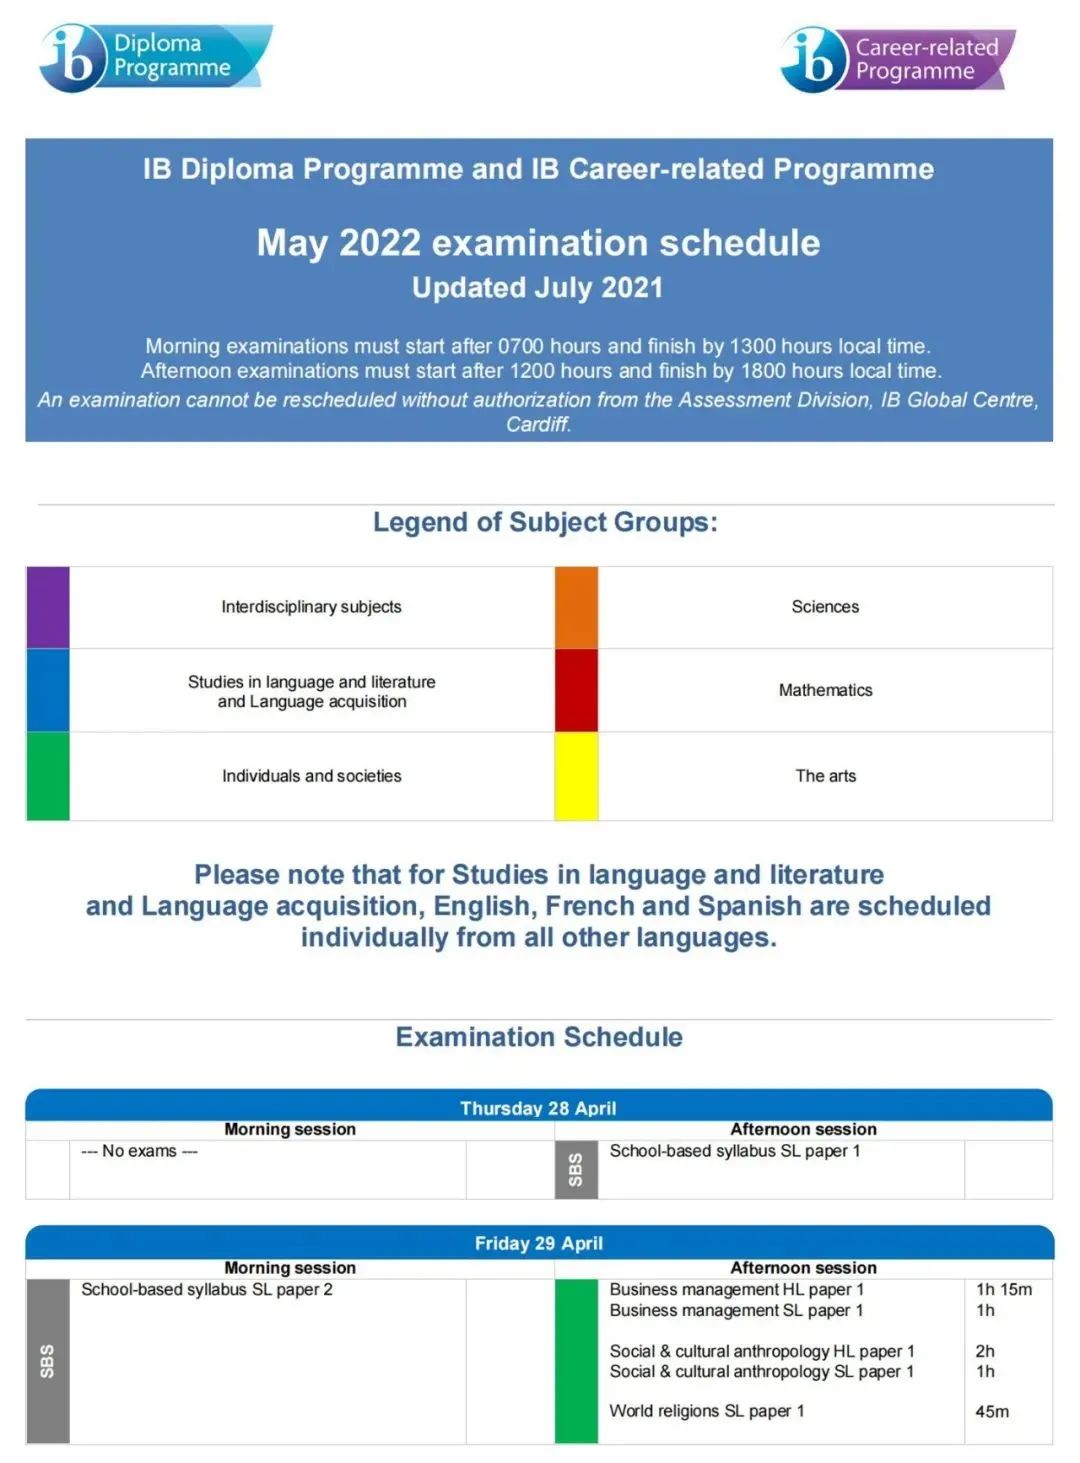 必存！2022年5月IB考试时间、科目和考试大纲变化！